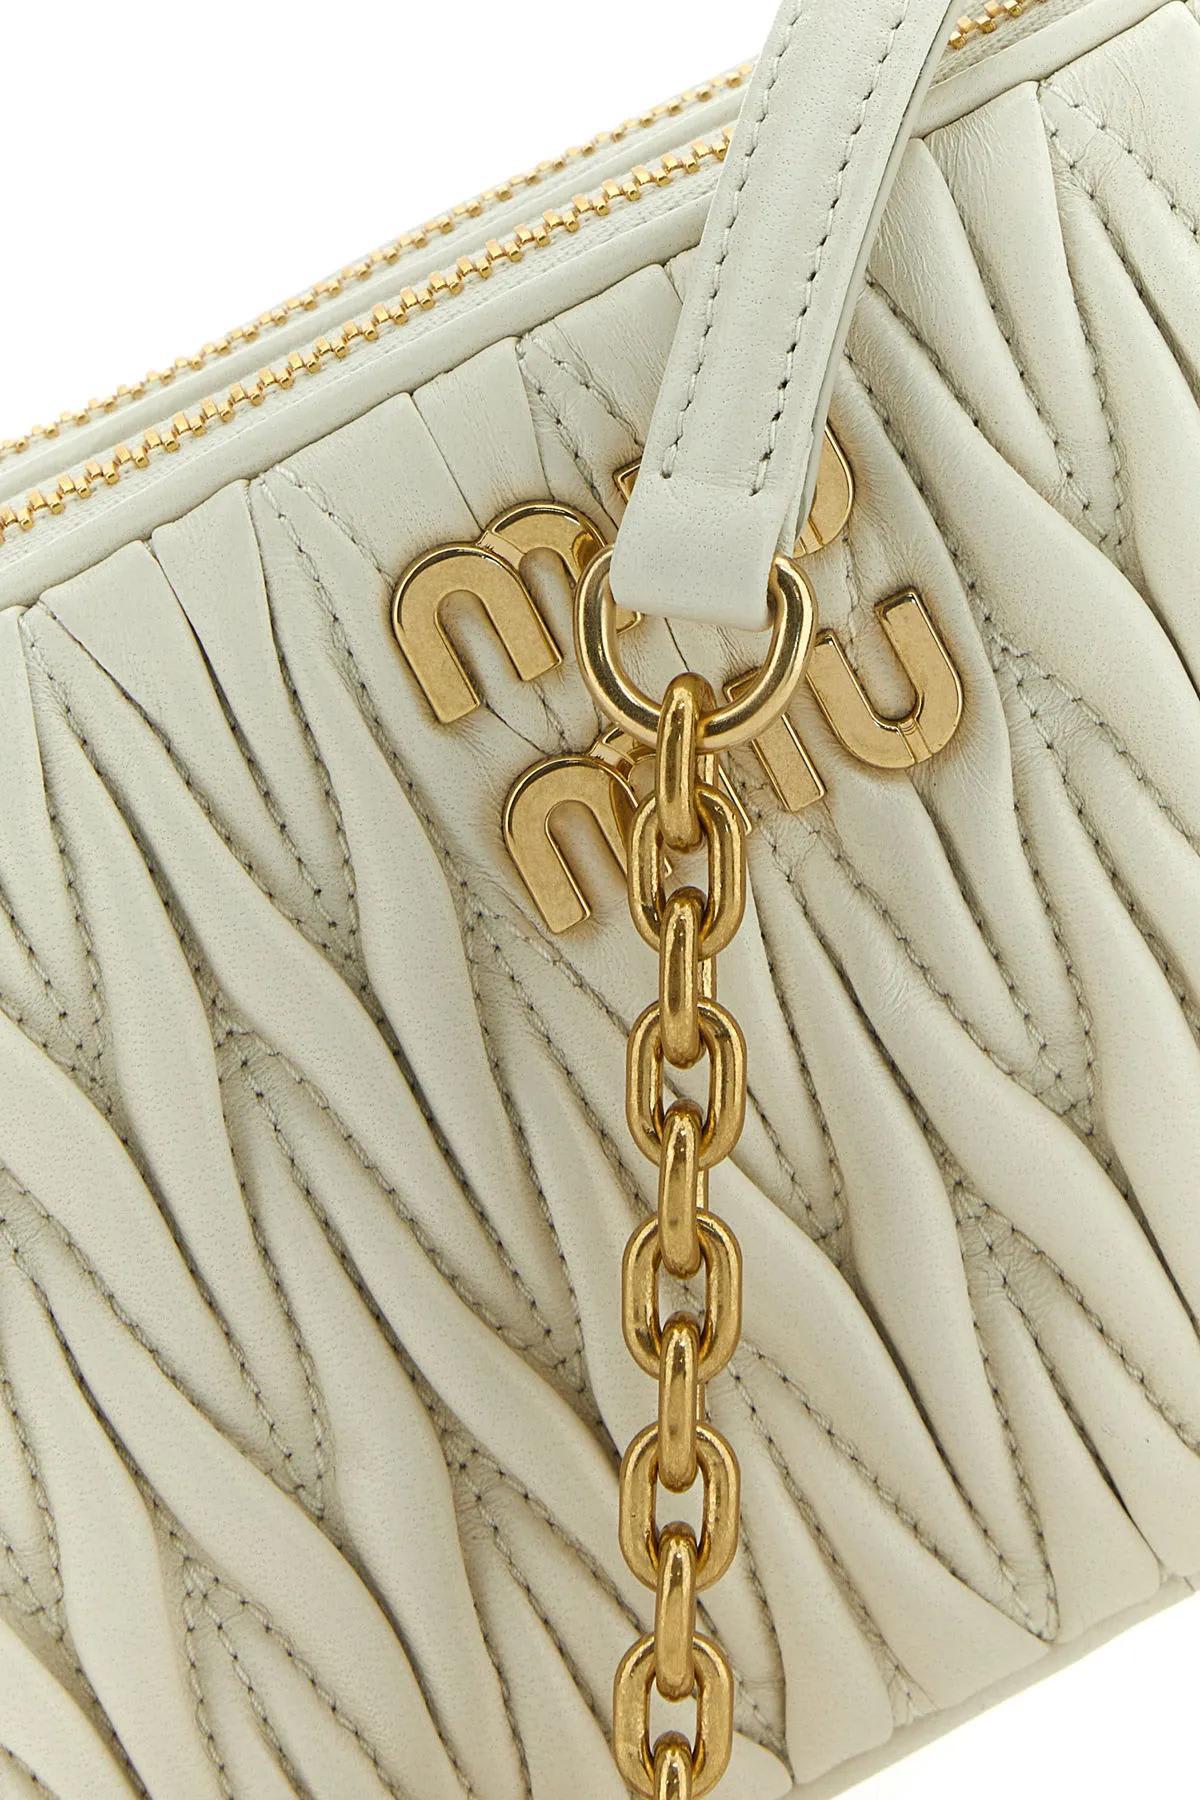 Miu Miu White Nappa Leather Mini Crossbody Bag in Metallic